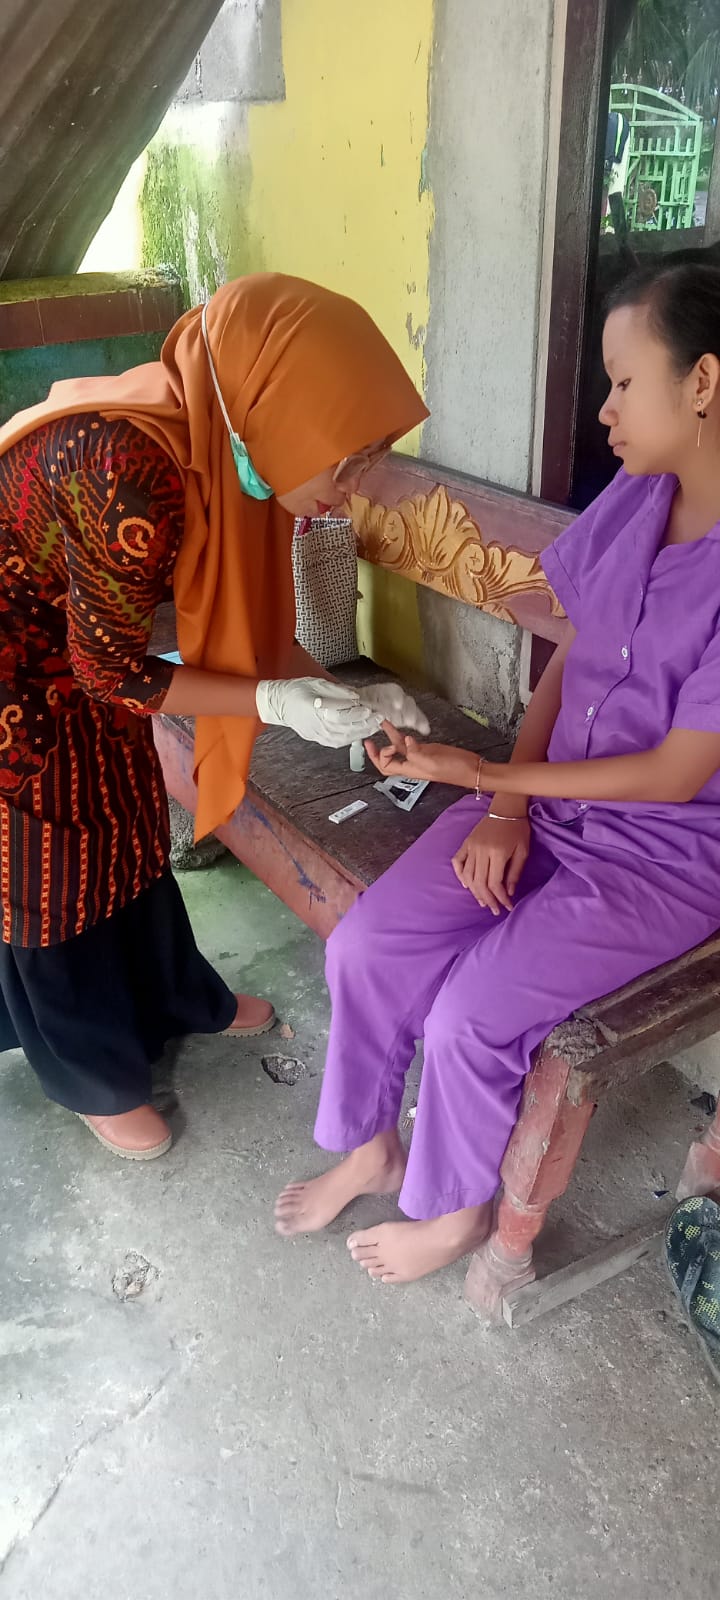 Pemeriksaaan malaria pada ibu hamil di nagari teratak tempatih oleh petugas puskesmas IV koto mudik